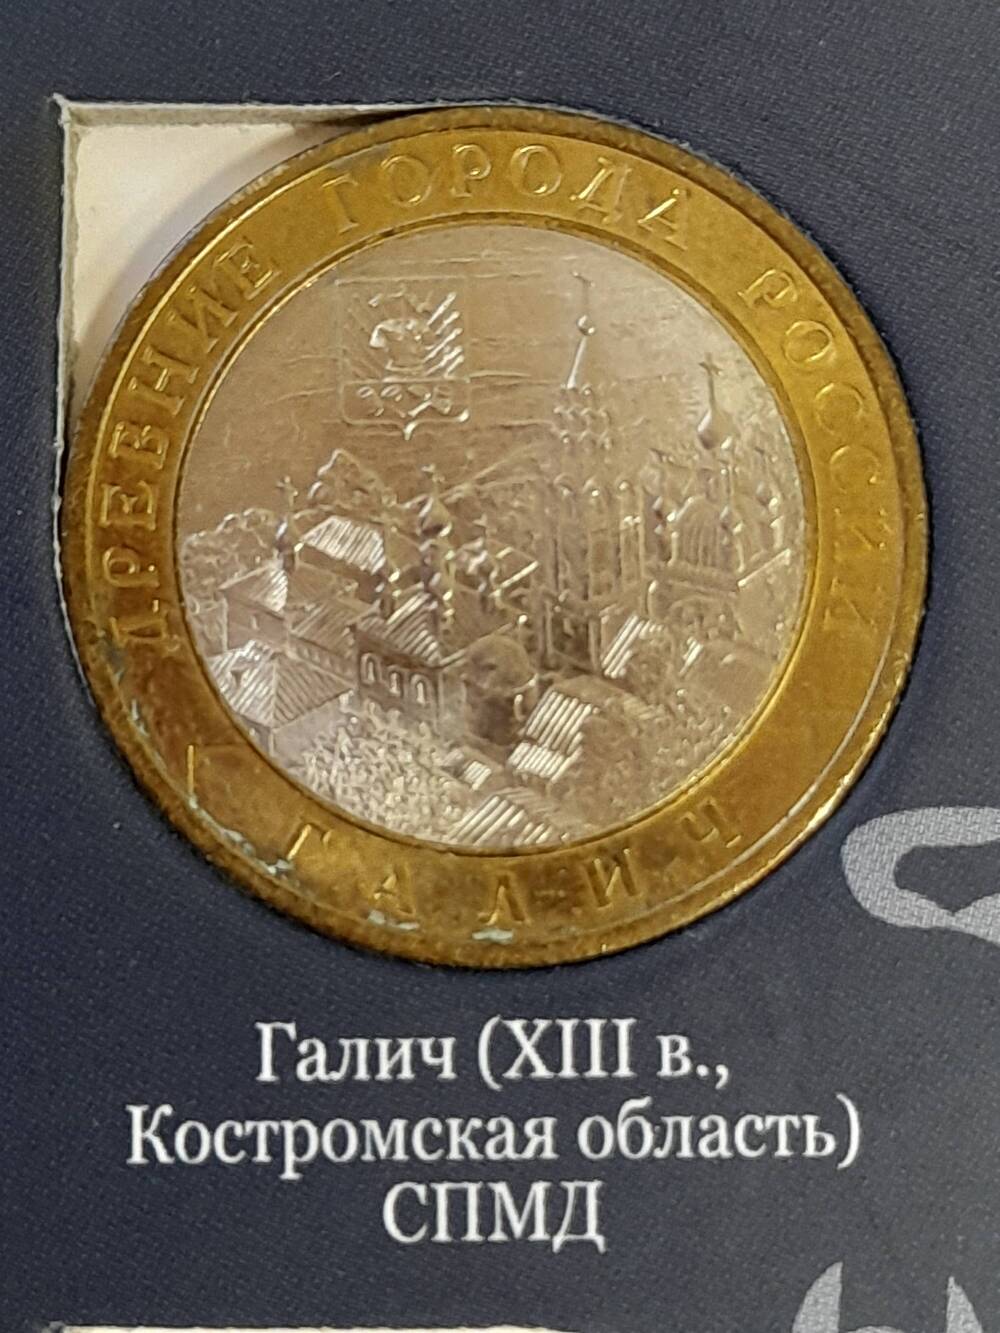 Монета памятная 10 РУБЛЕЙ. Галич 2009 г. Россия